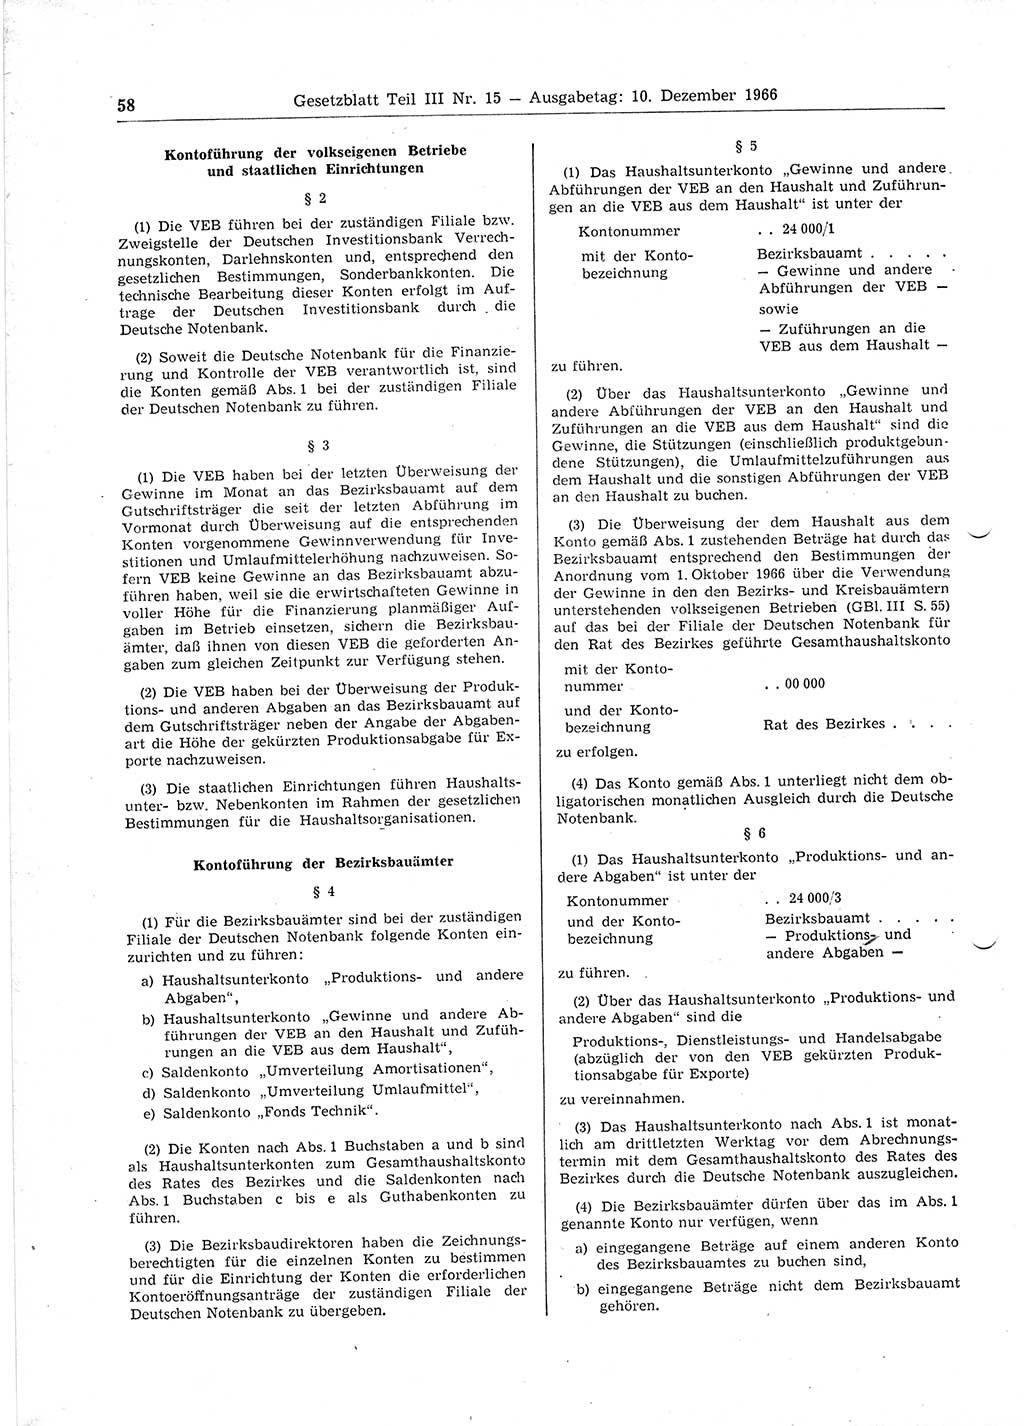 Gesetzblatt (GBl.) der Deutschen Demokratischen Republik (DDR) Teil ⅠⅠⅠ 1966, Seite 58 (GBl. DDR ⅠⅠⅠ 1966, S. 58)